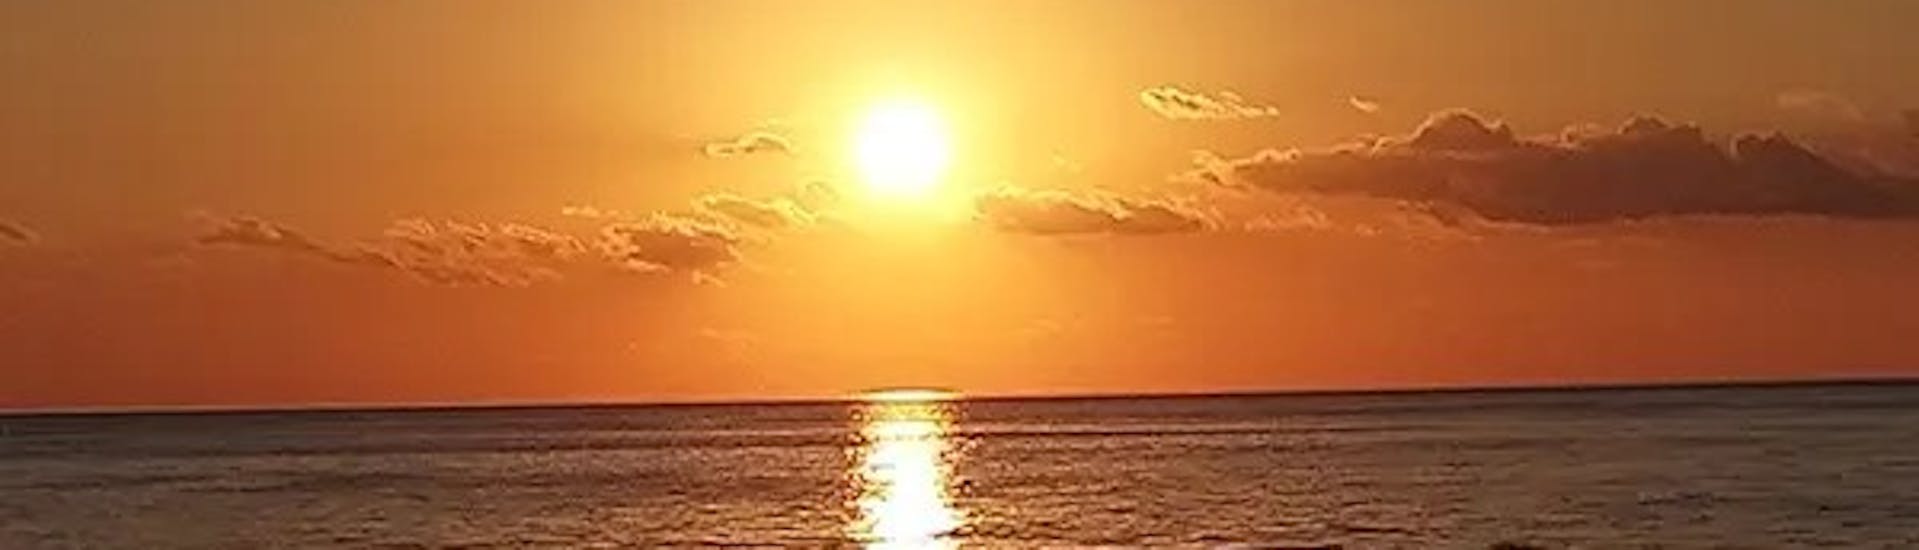 Die Sonne geht langsam unter während der Privaten Bootstour mit Dinner & Badestopps bei Sonnenuntergang organisiert von Aloha Boat Charters Malta.